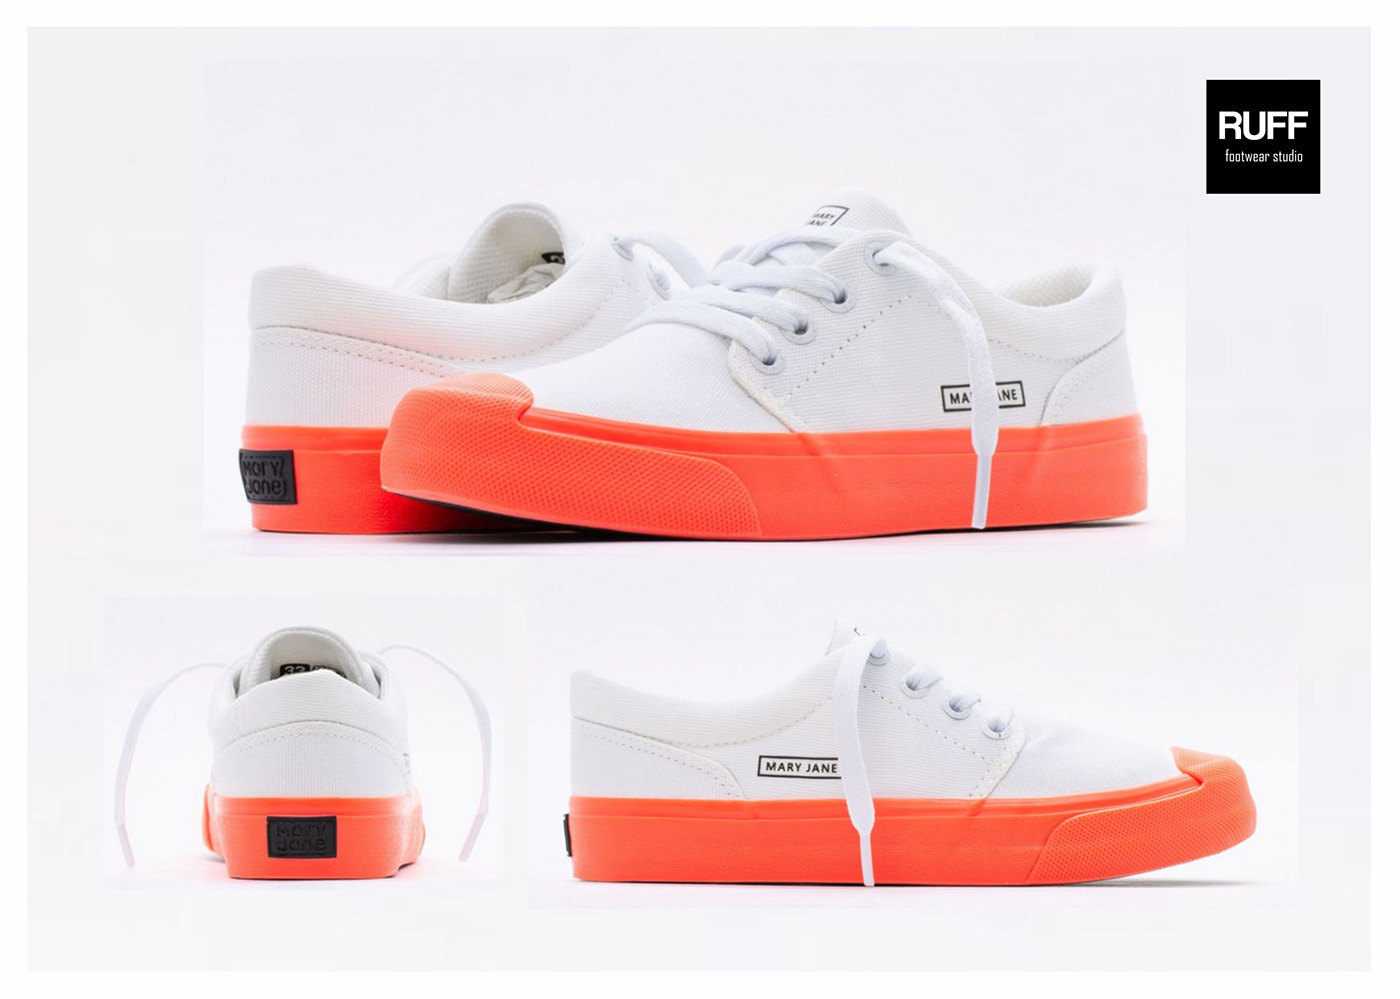 design Fashion  footwear footwear design product rubber skateboard sneakers streetwear vulcanized